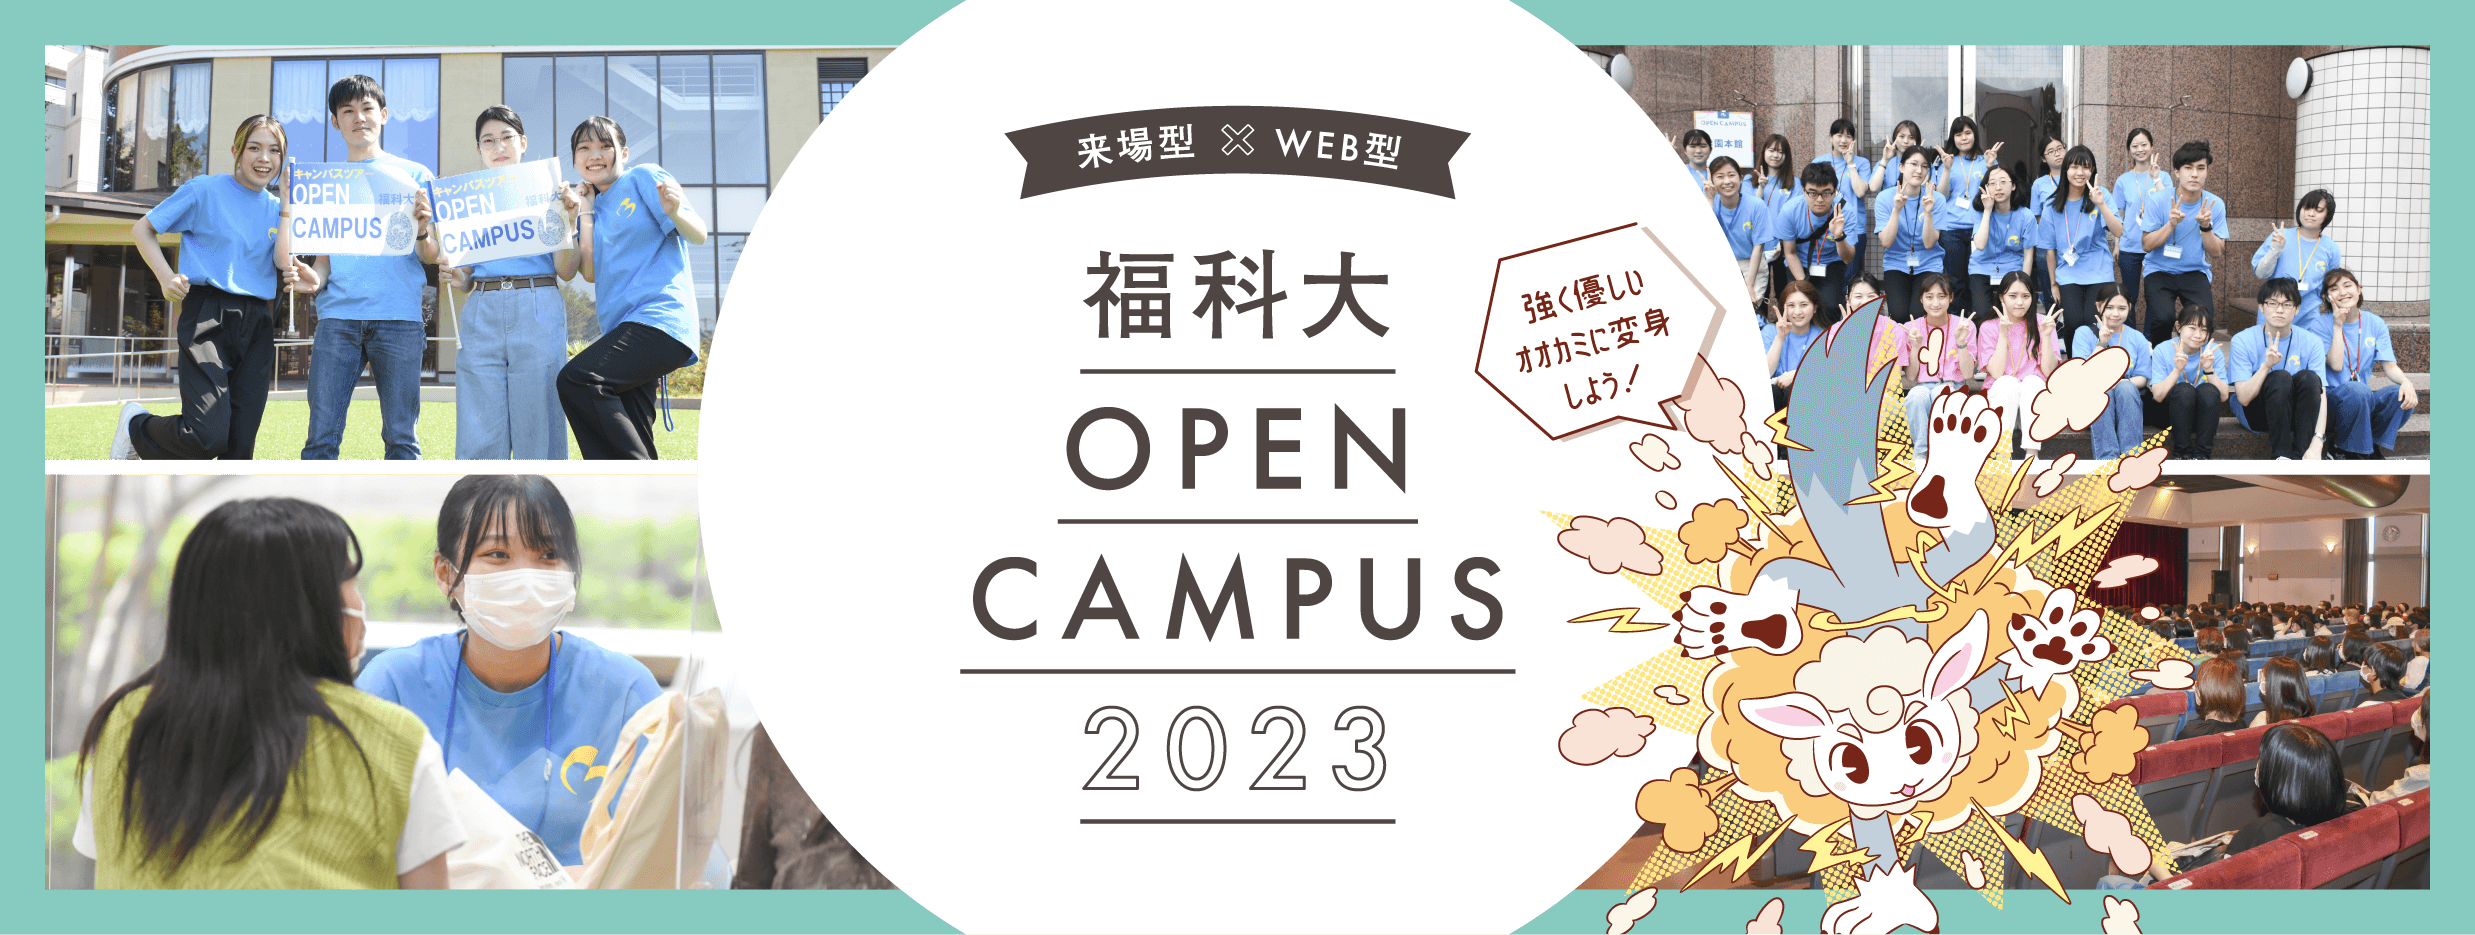 2022 関西福祉科学大学 オープンキャンパス のびしろストーリーをはじめよう